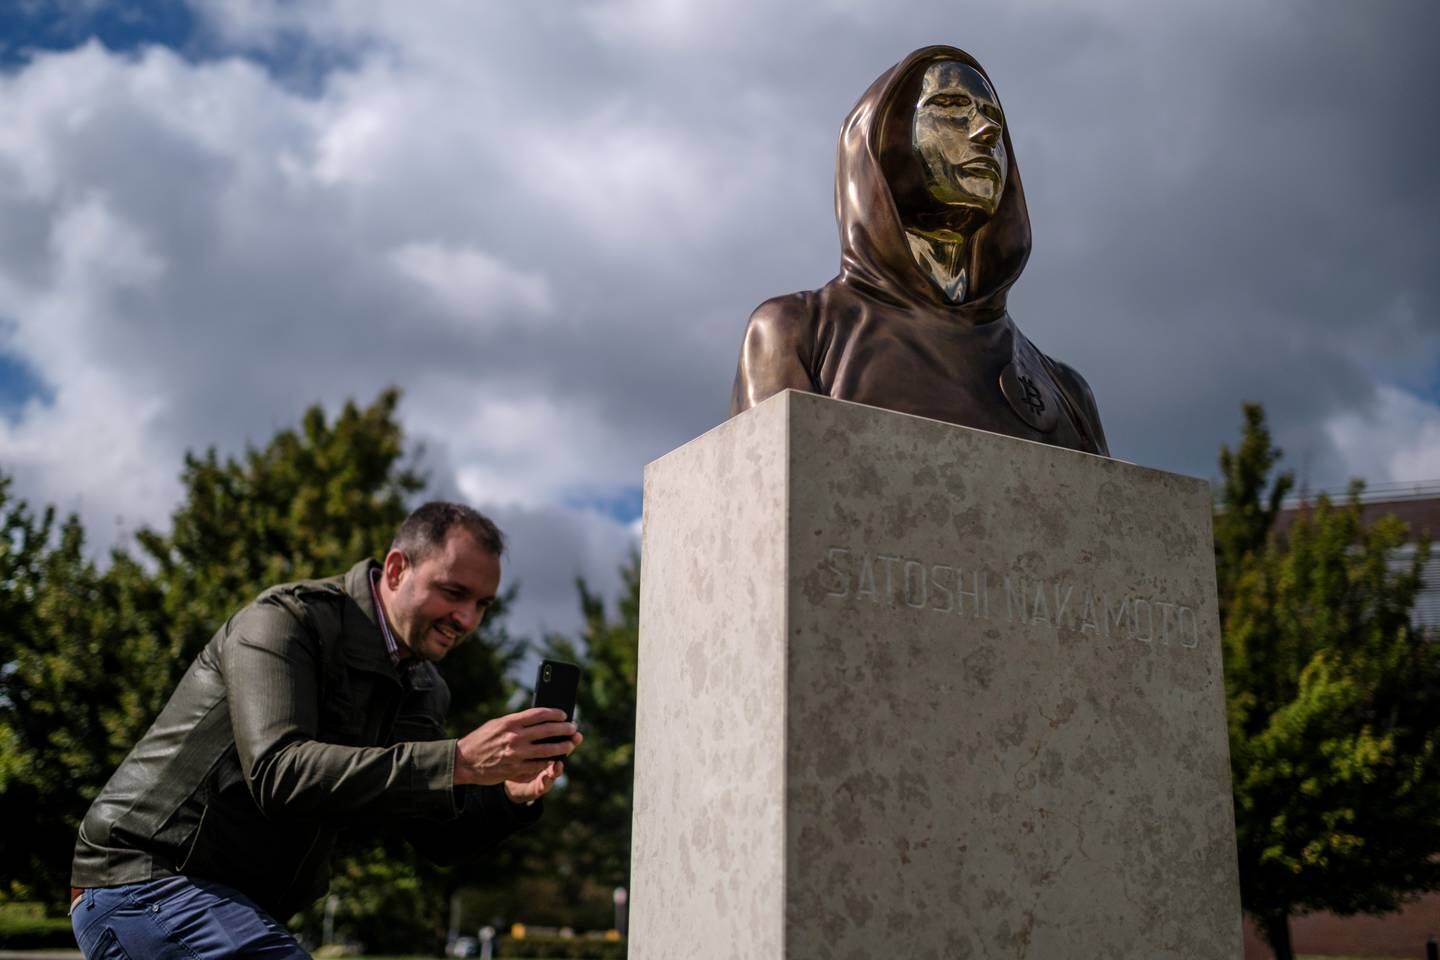 Un passante scatta una foto di una statua di Satoshi Nakamoto a Budapest, in Ungheria.  I creatori della statua, Reka Gergely e Tamas Gilly, hanno utilizzato tratti del viso anonimizzati poiché la vera identità di Nakamoto rimane non confermata.  Getty